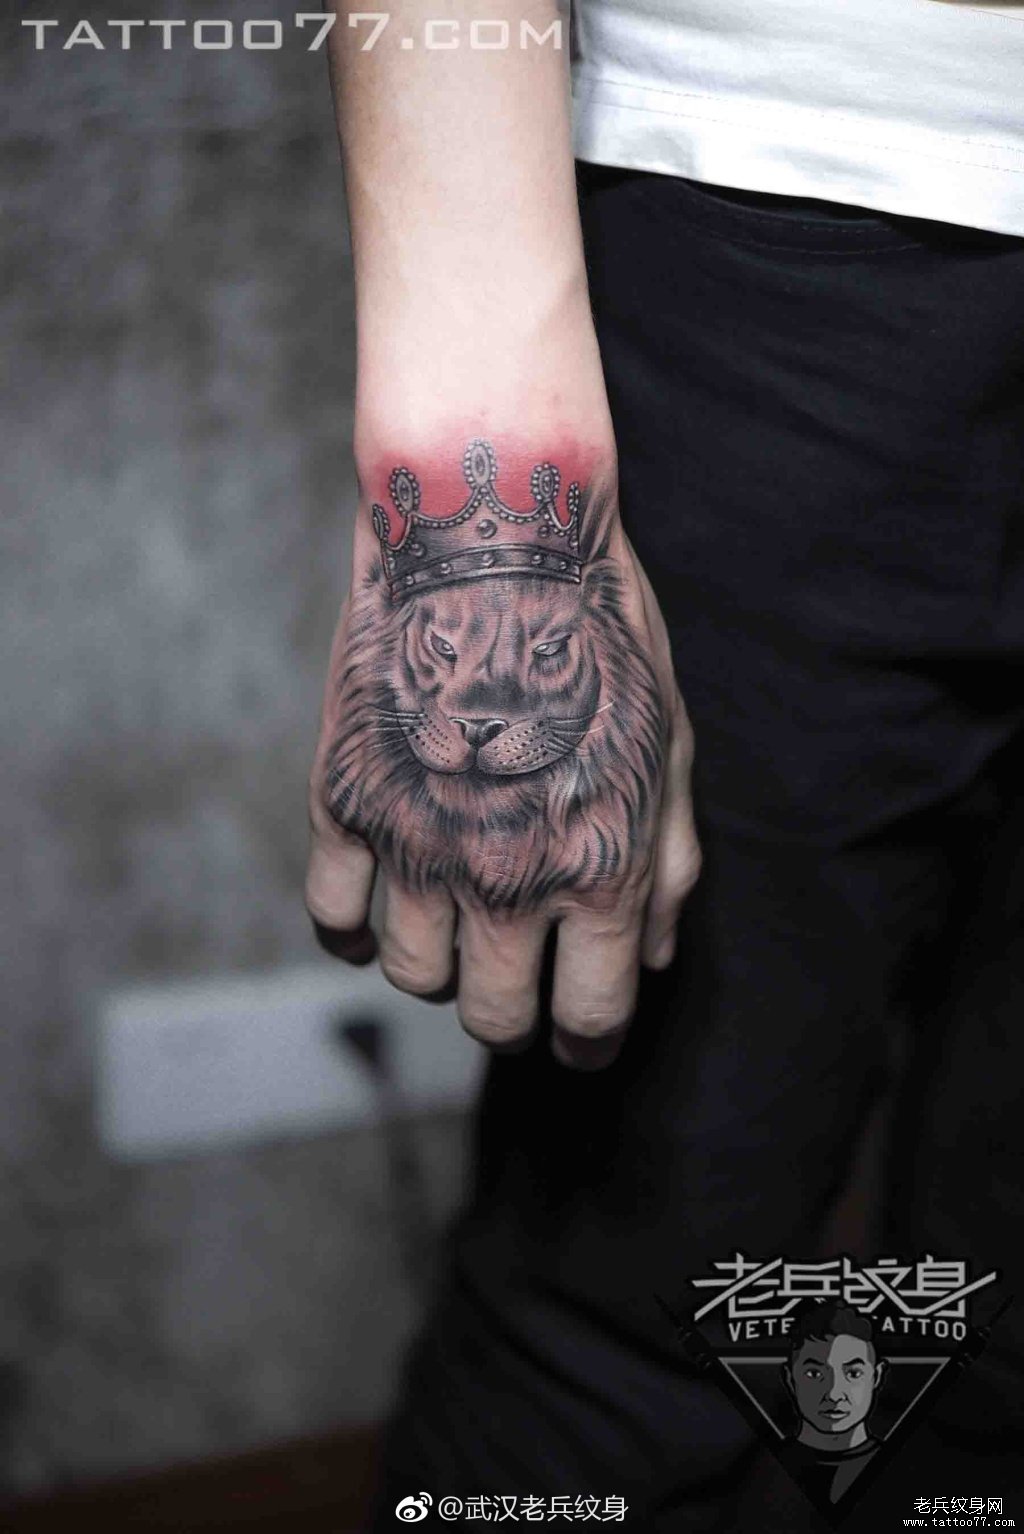 帅气个性的手背狮子纹身图案作品